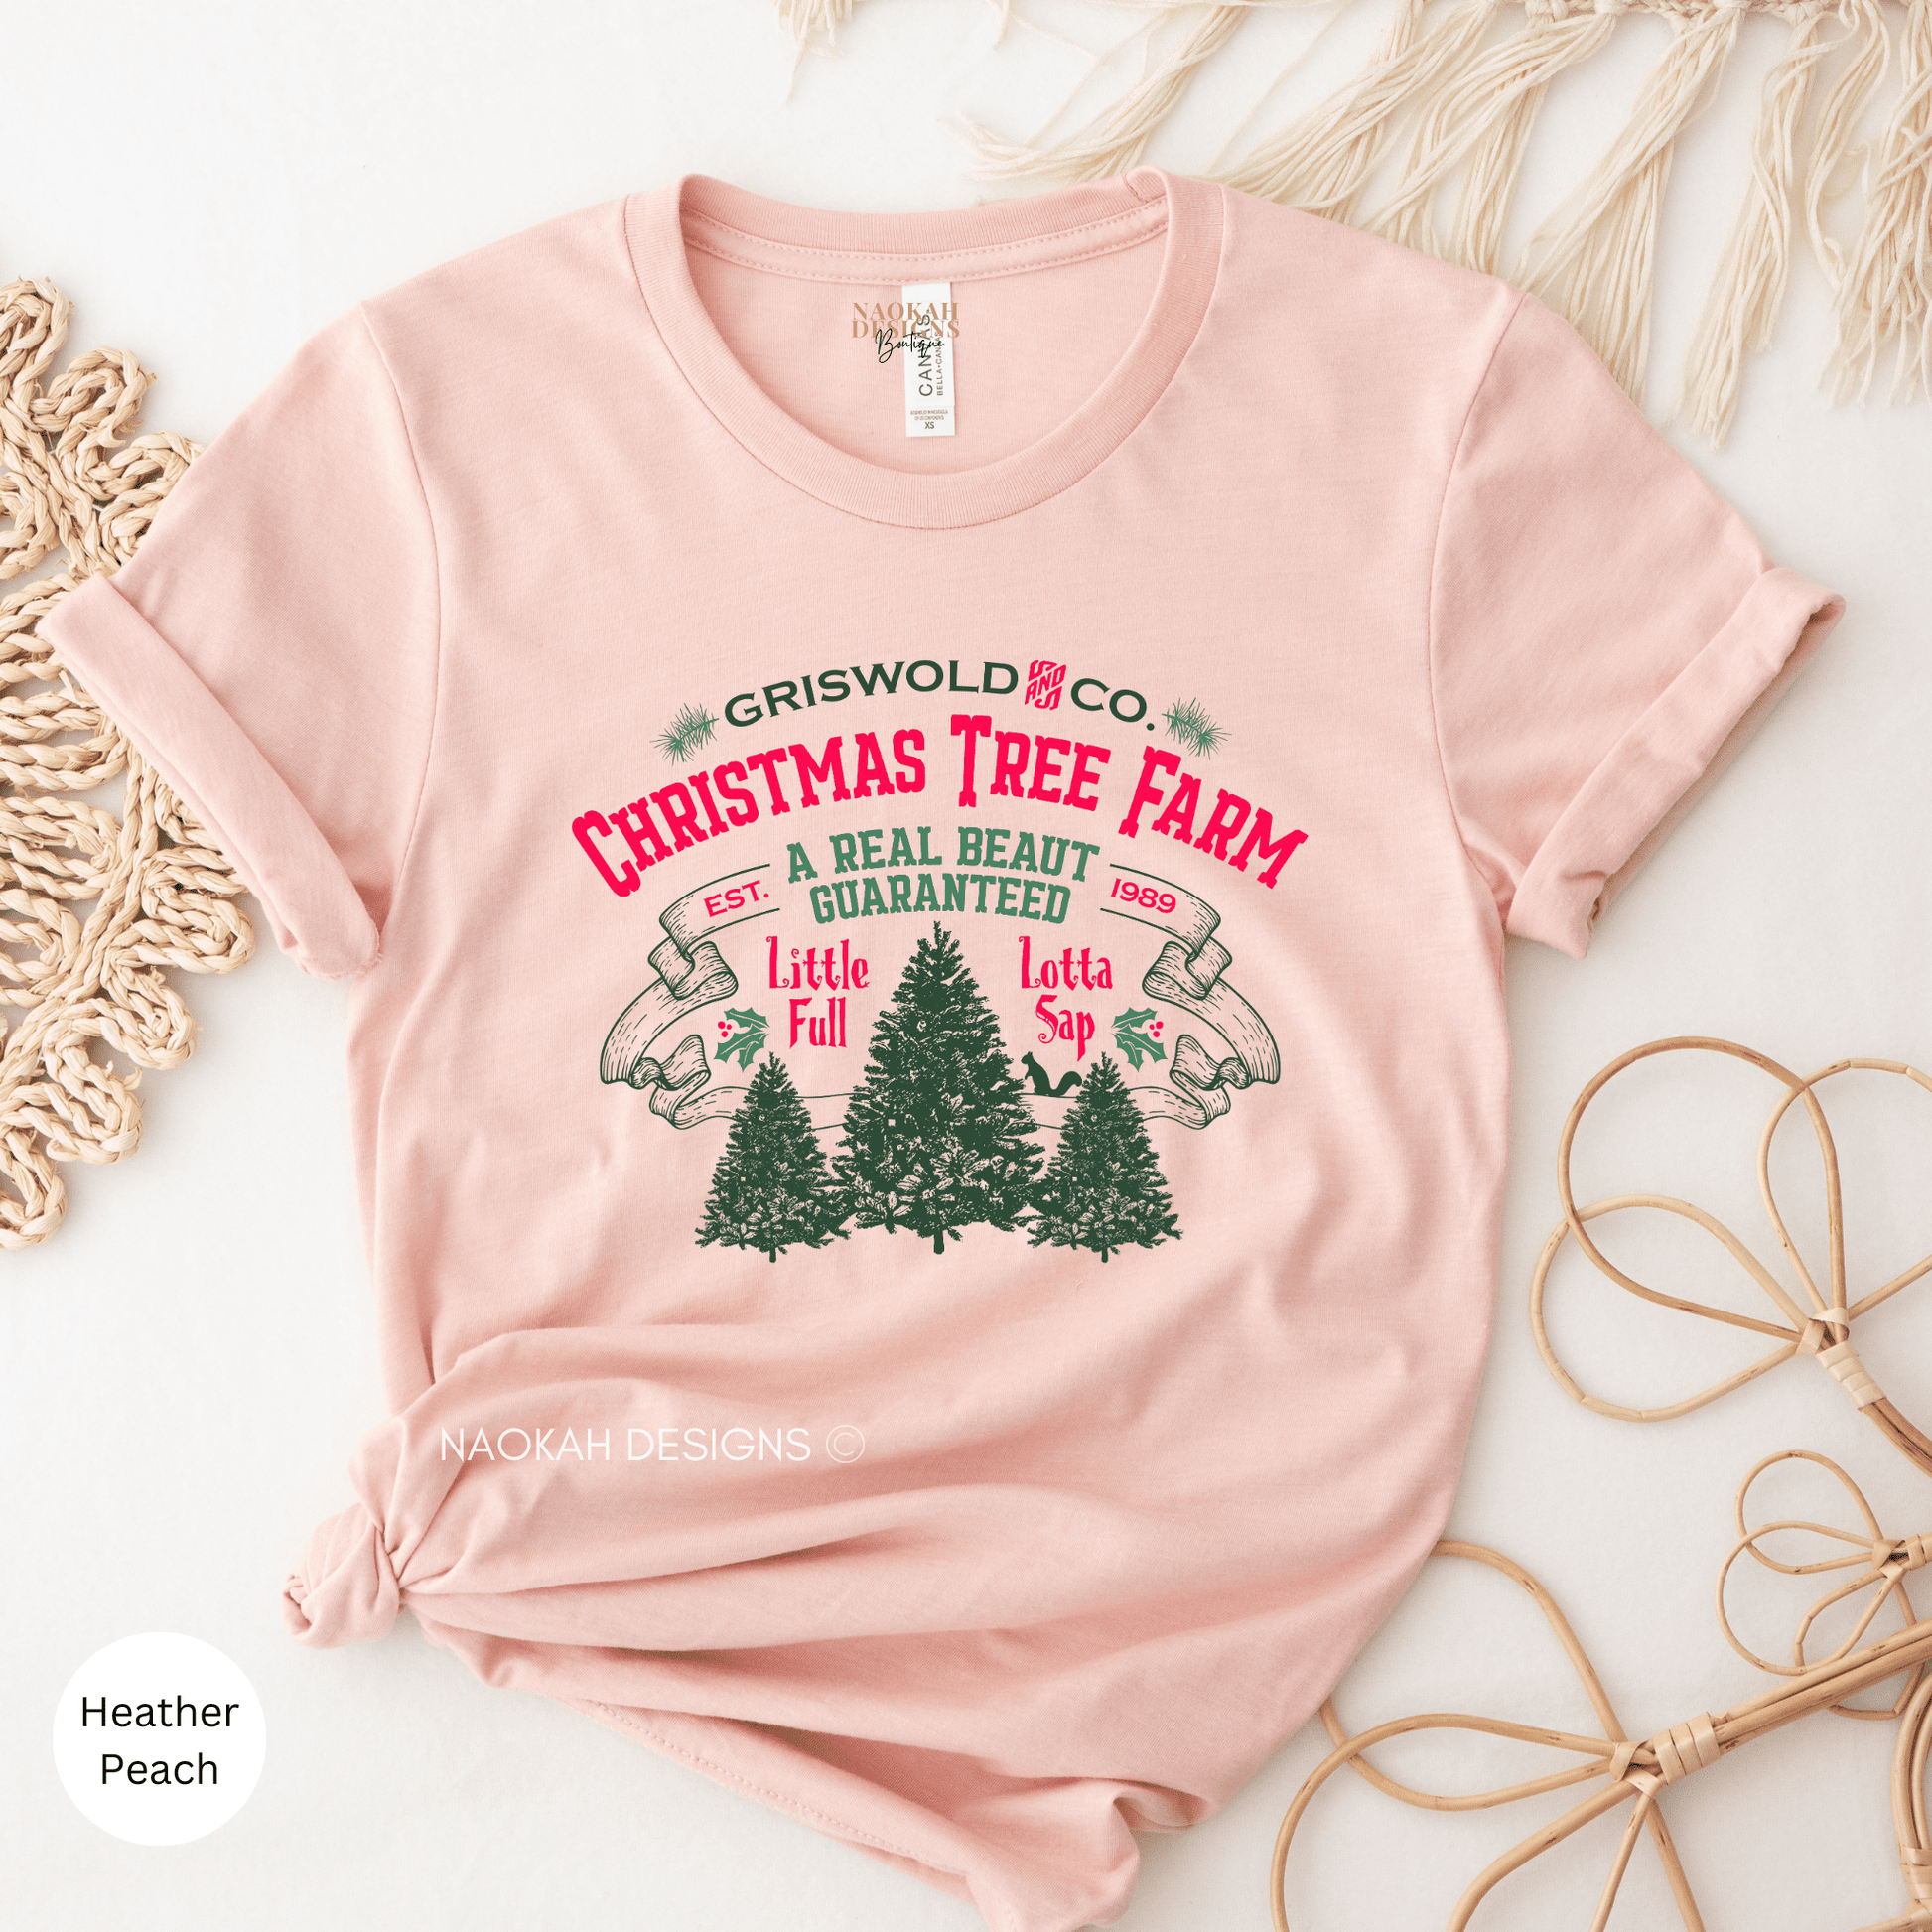 Griswold Christmas Tree Farm Shirt, Christmas Shirt For Women, Christmas Tree Shirt, Christmas Shirt, Holiday Shirt, Winter Shirt, Merry Christmas, Tree Farm Shirt, Farm Fresh, Christmas Vacation Shirt